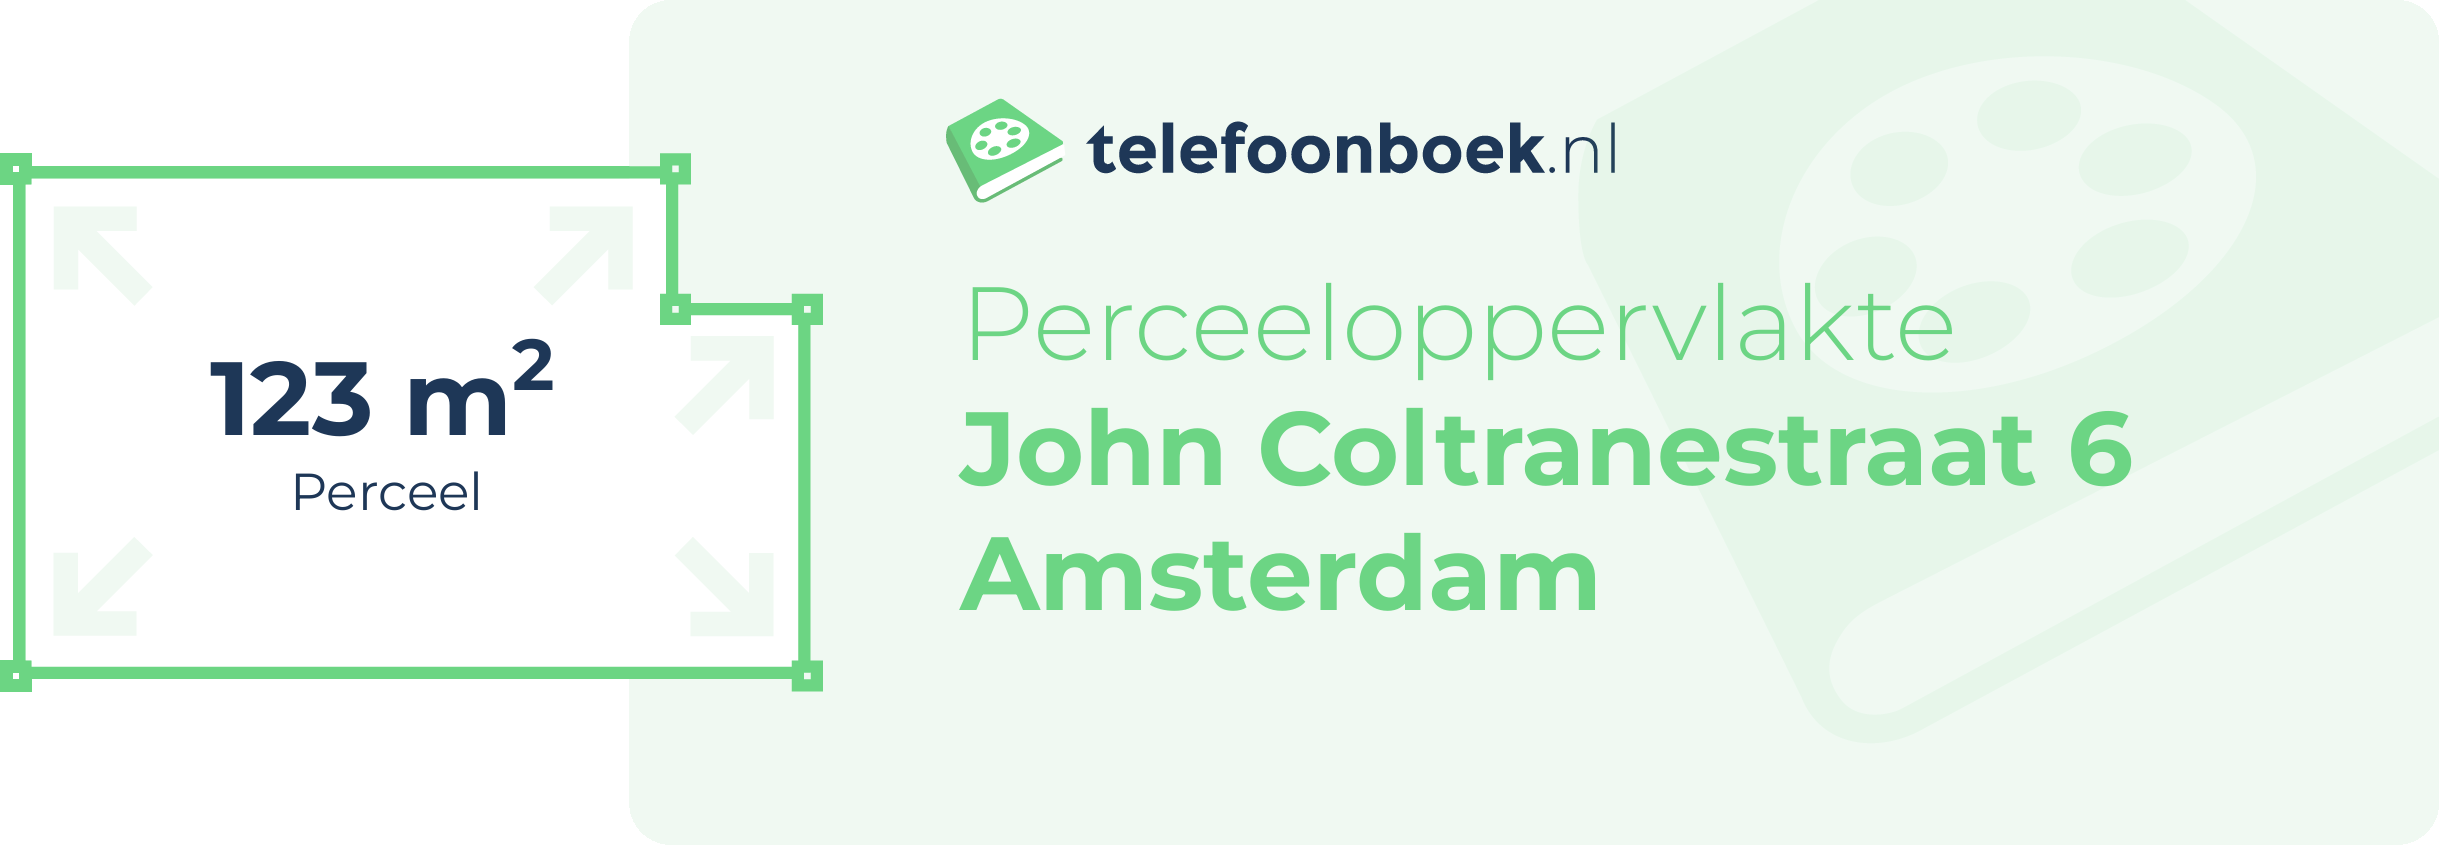 Perceeloppervlakte John Coltranestraat 6 Amsterdam